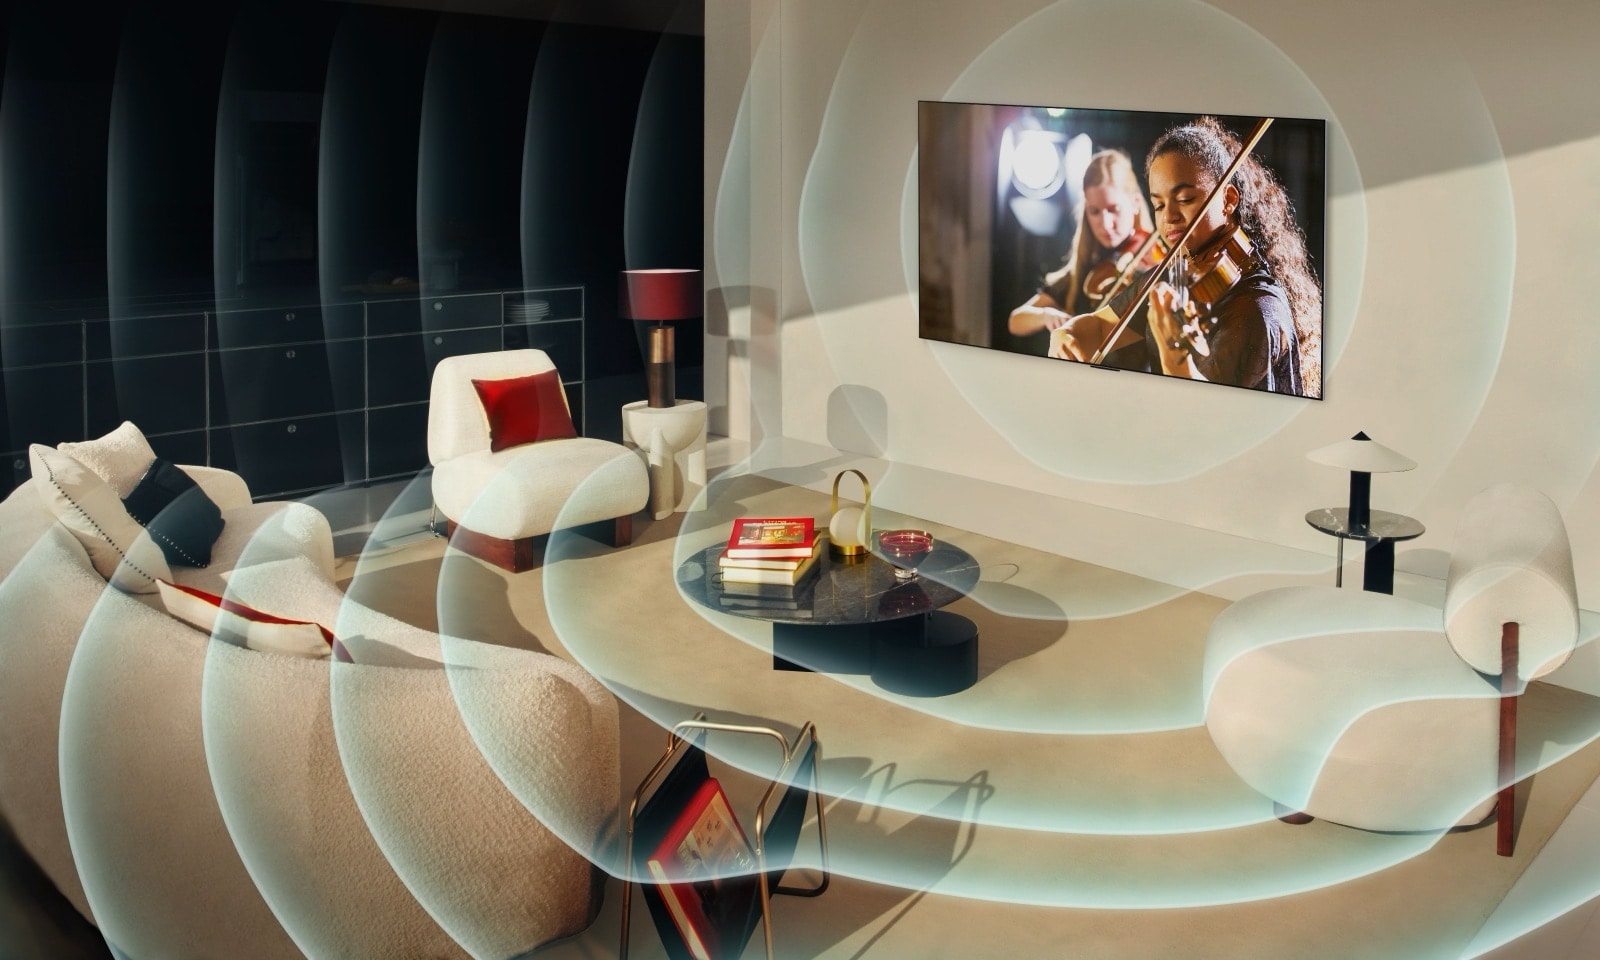 Телевизор LG OLED TV в современной городской квартире. На изображении появляется сетка, напоминающая сканирование пространства, а затем синие звуковые волны излучаются из экрана, идеально заполняя комнату звуком.